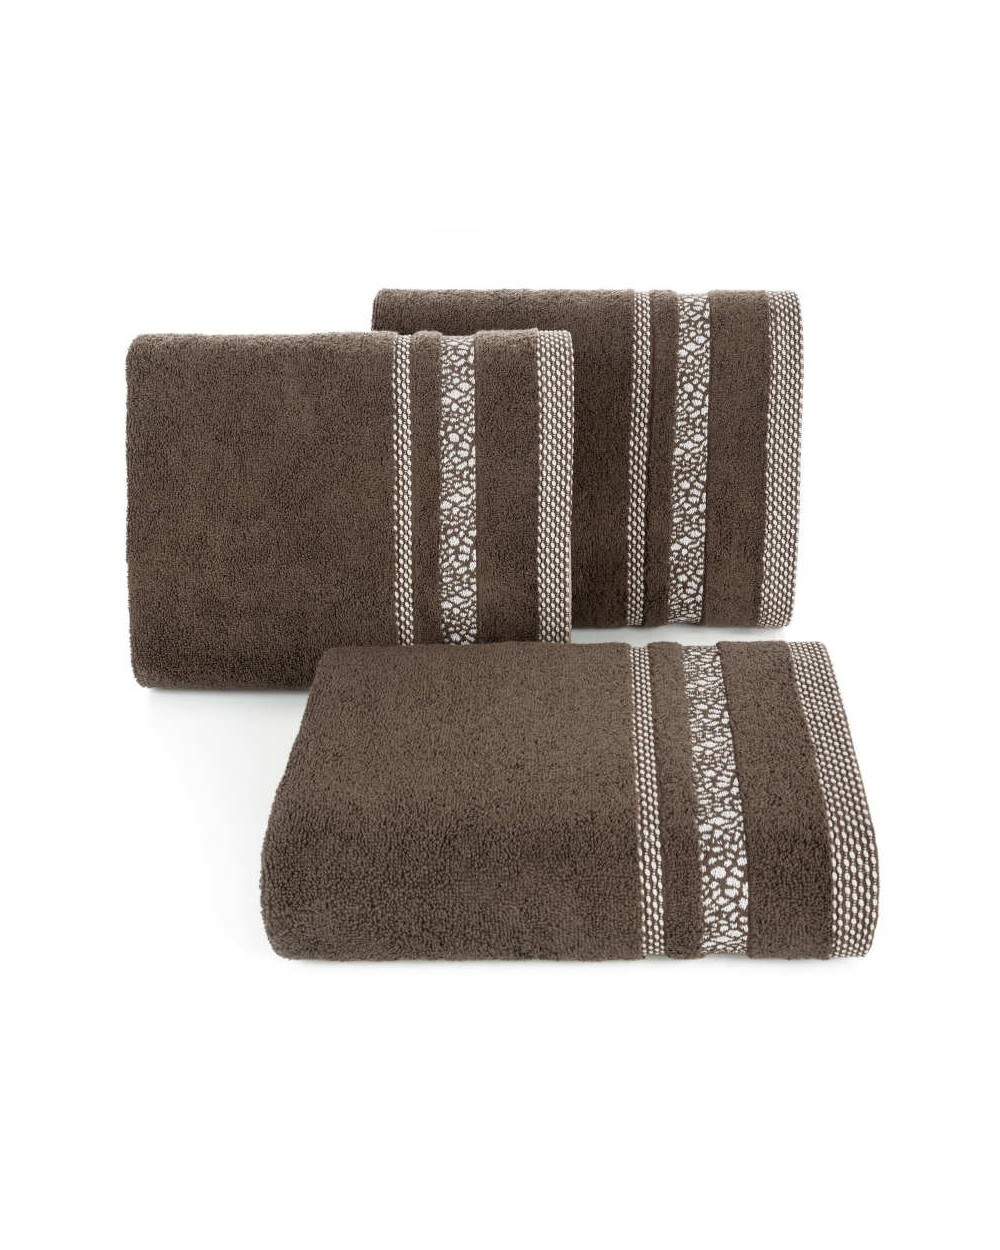 Ręcznik bawełna 50x90 Tessa brązowy